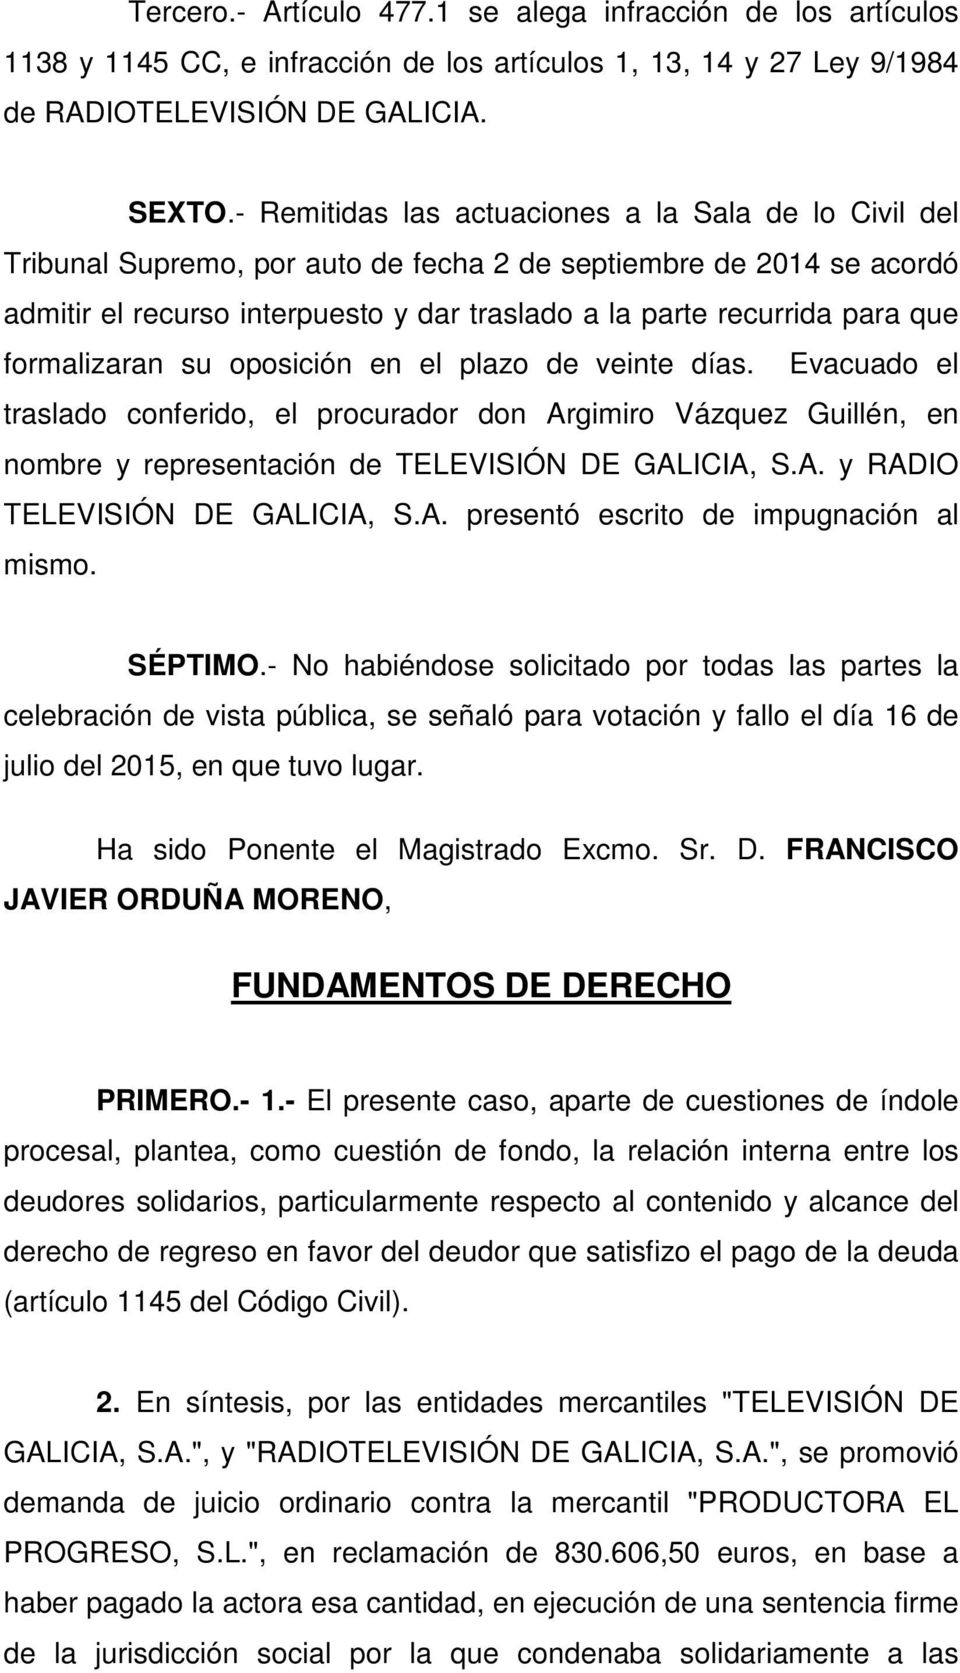 formalizaran su oposición en el plazo de veinte días. Evacuado el traslado conferido, el procurador don Argimiro Vázquez Guillén, en nombre y representación de TELEVISIÓN DE GALICIA, S.A. y RADIO TELEVISIÓN DE GALICIA, S.